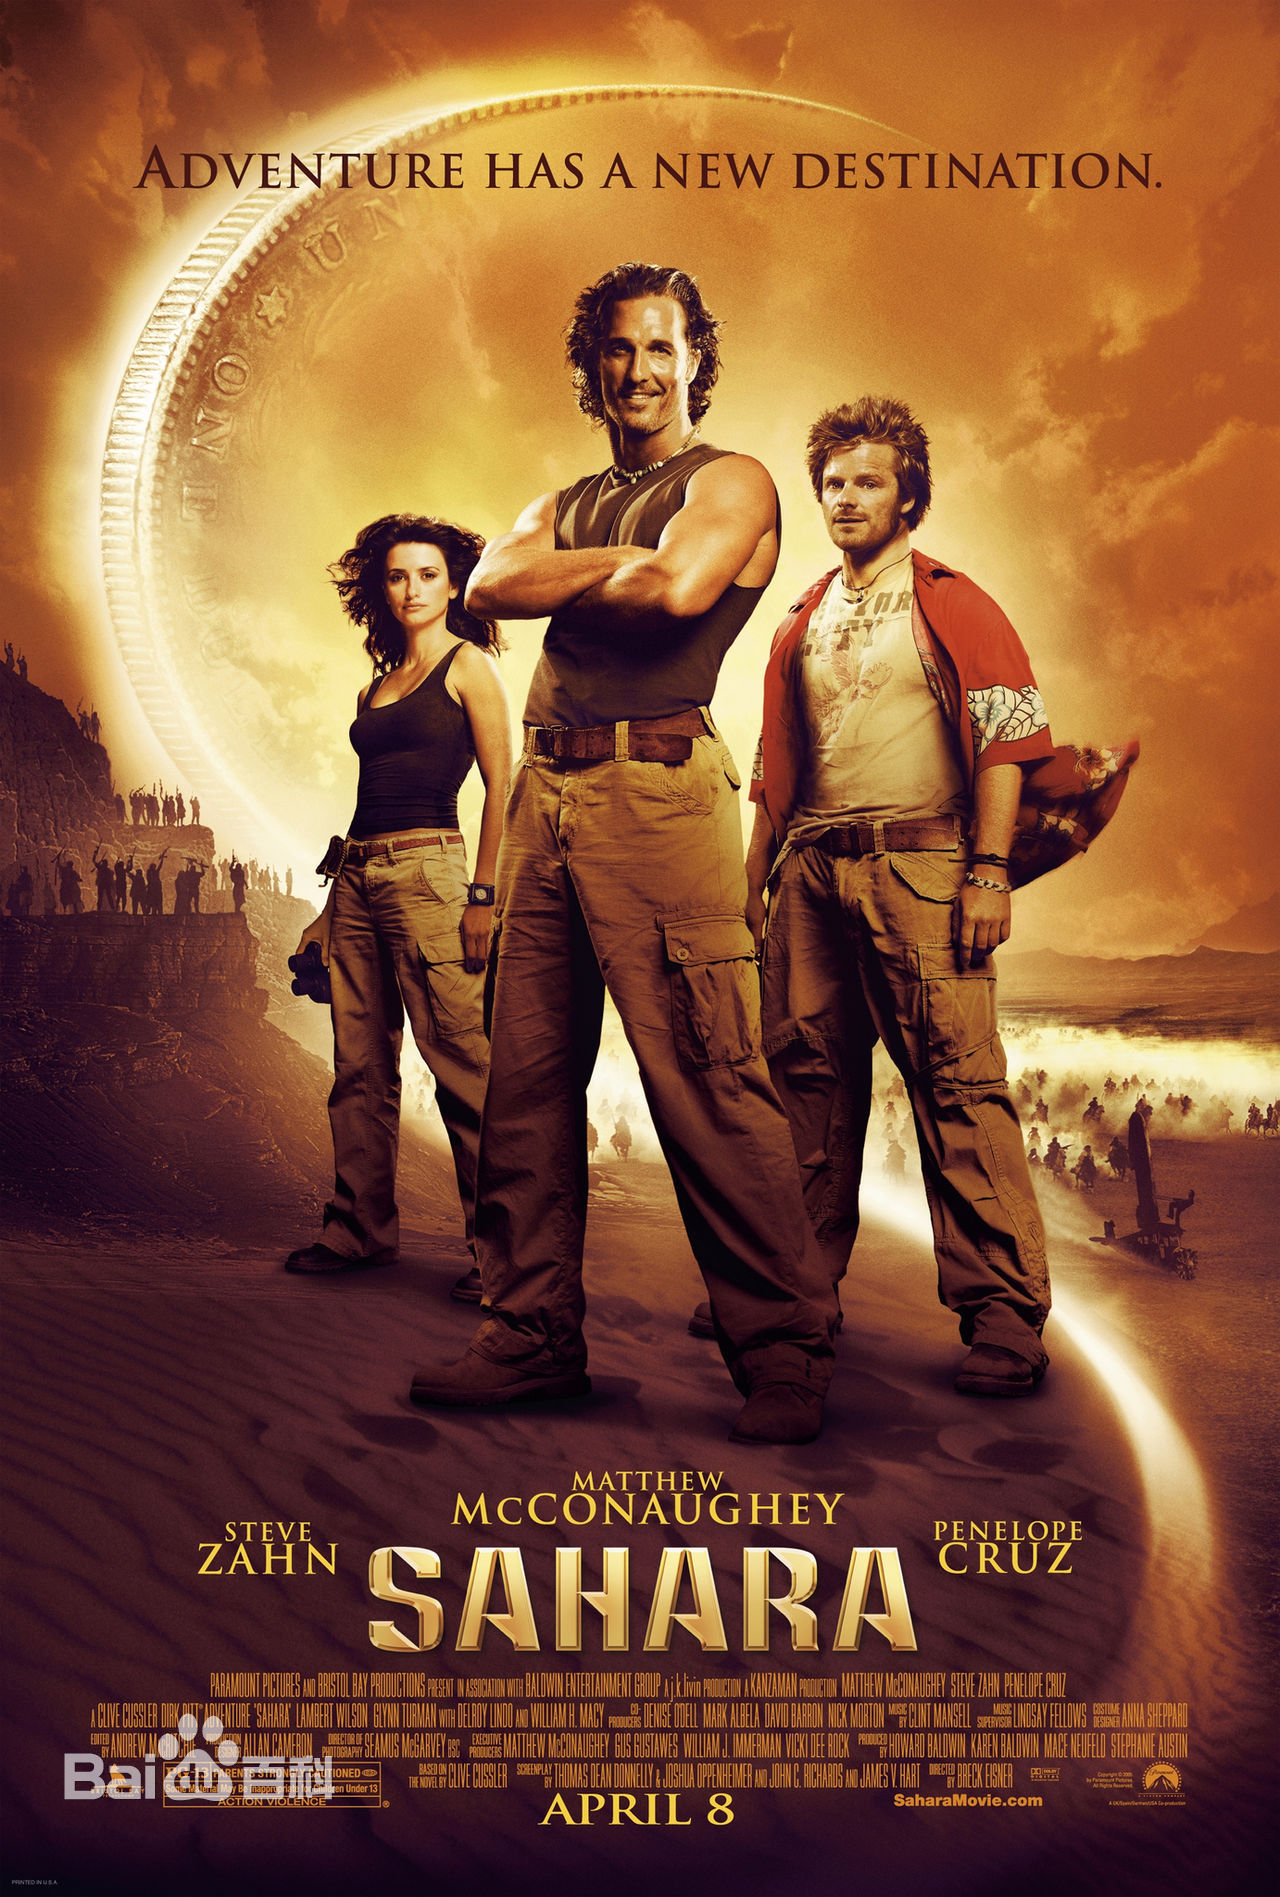 撒哈拉   (2005年布莱克·伊斯纳执导电影)   《撒哈拉》是由布莱克